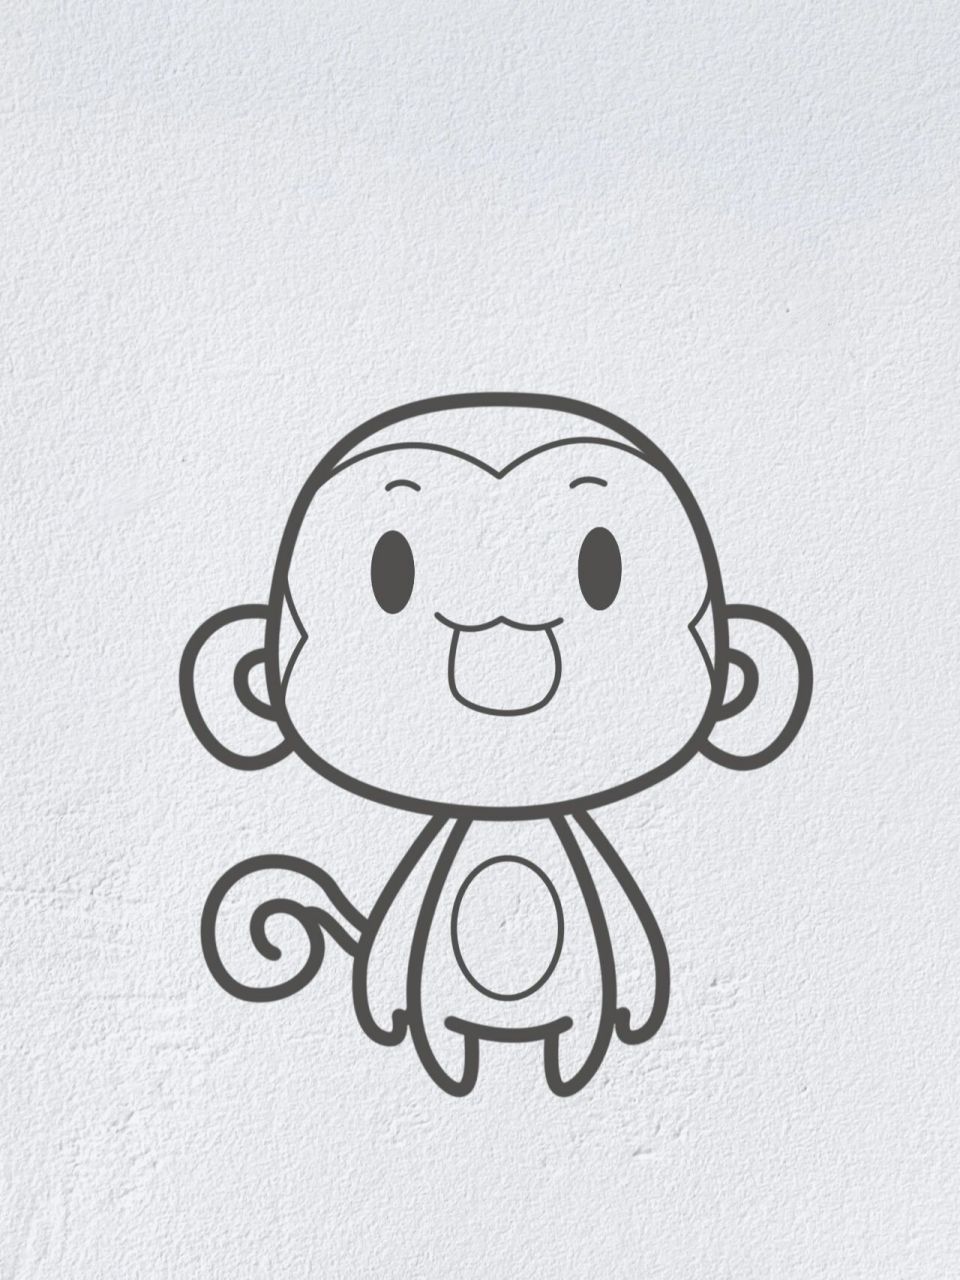 动物简笔画系列之可爱的小猴子